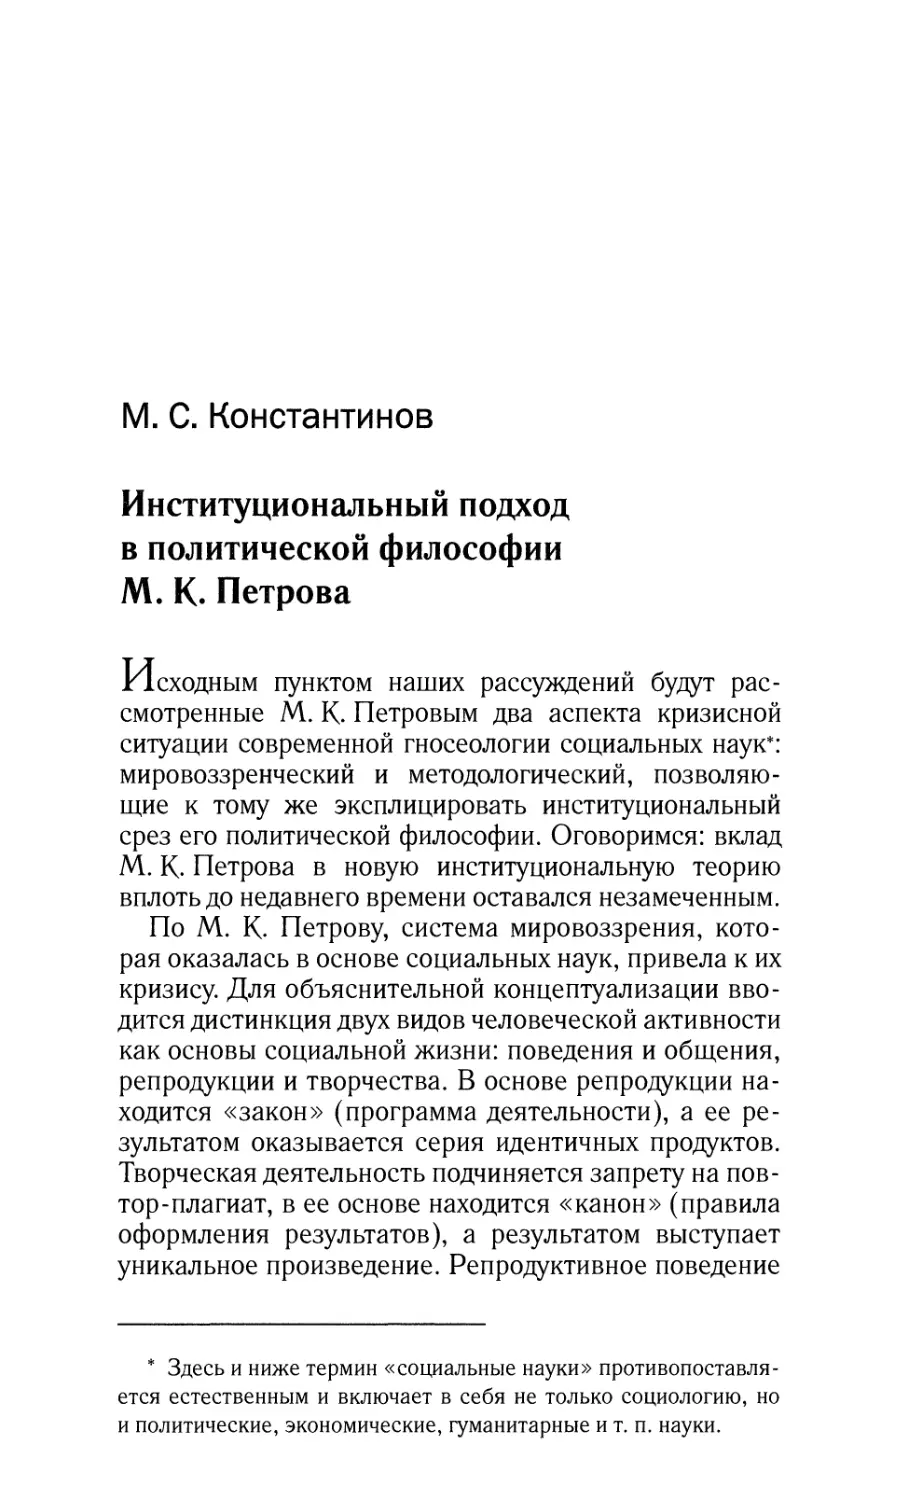 Институциональный подход в политической философии М.К.Петрова